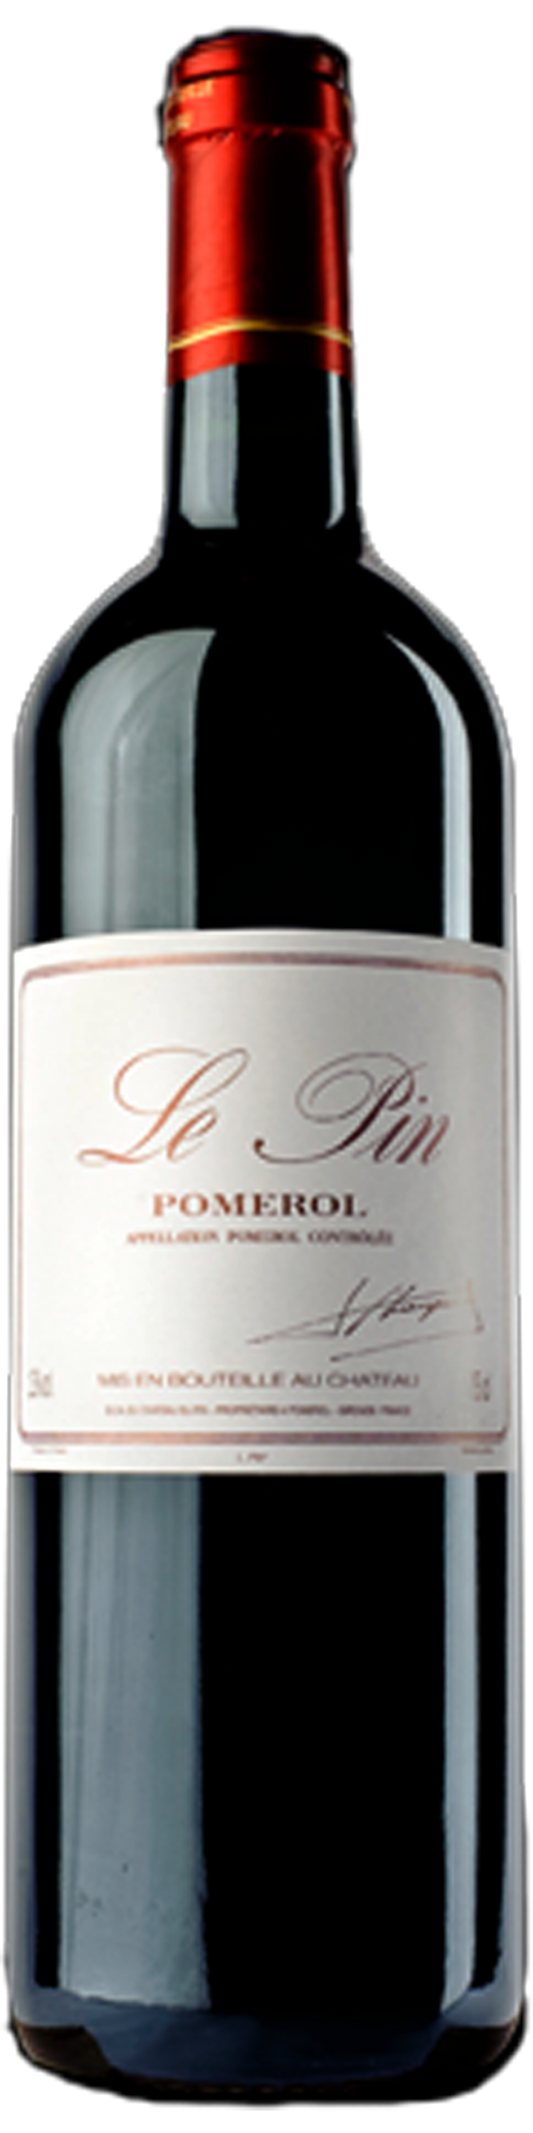 【宏康商行】紅酒回收行 專業收購各系列紅酒  回收裡鵬Le Pin Pomerol 2003 系列紅酒